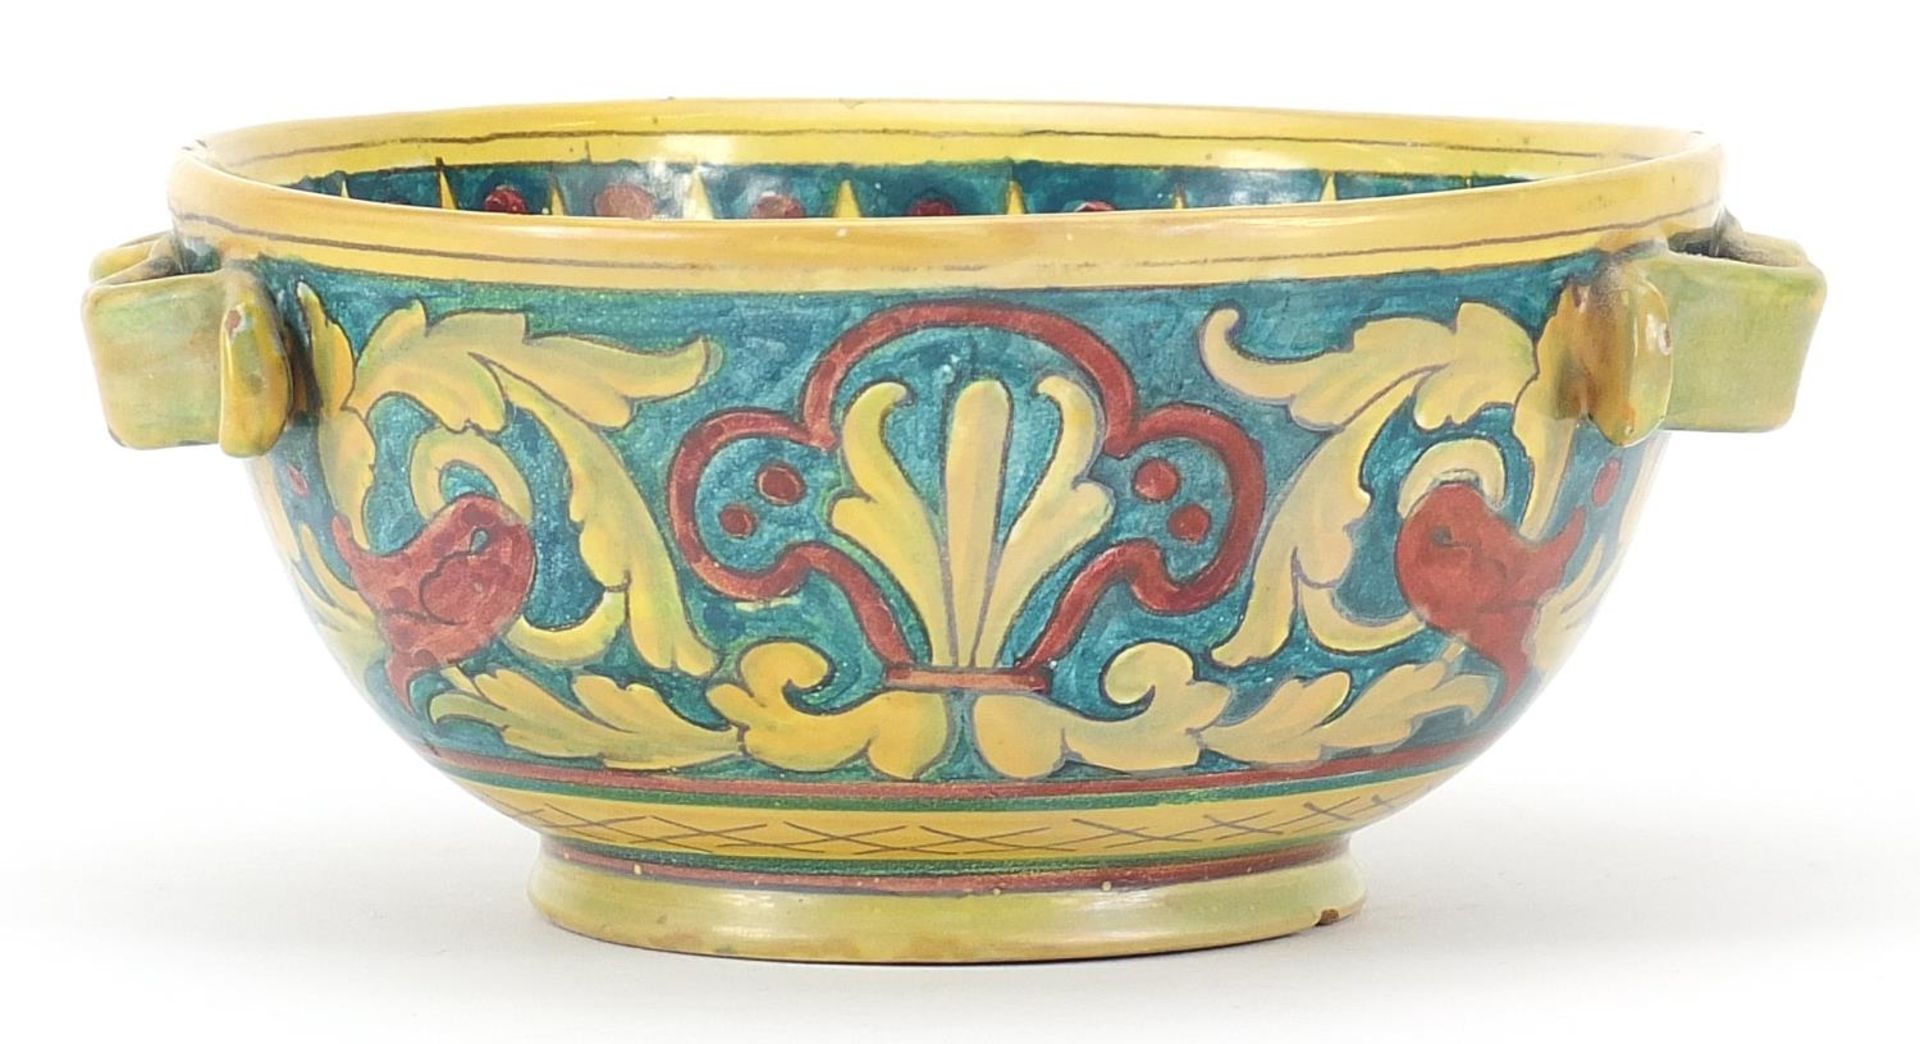 Italian lustre bowl in the style of William de Morgan, 18.5cm in diameter - Image 4 of 6